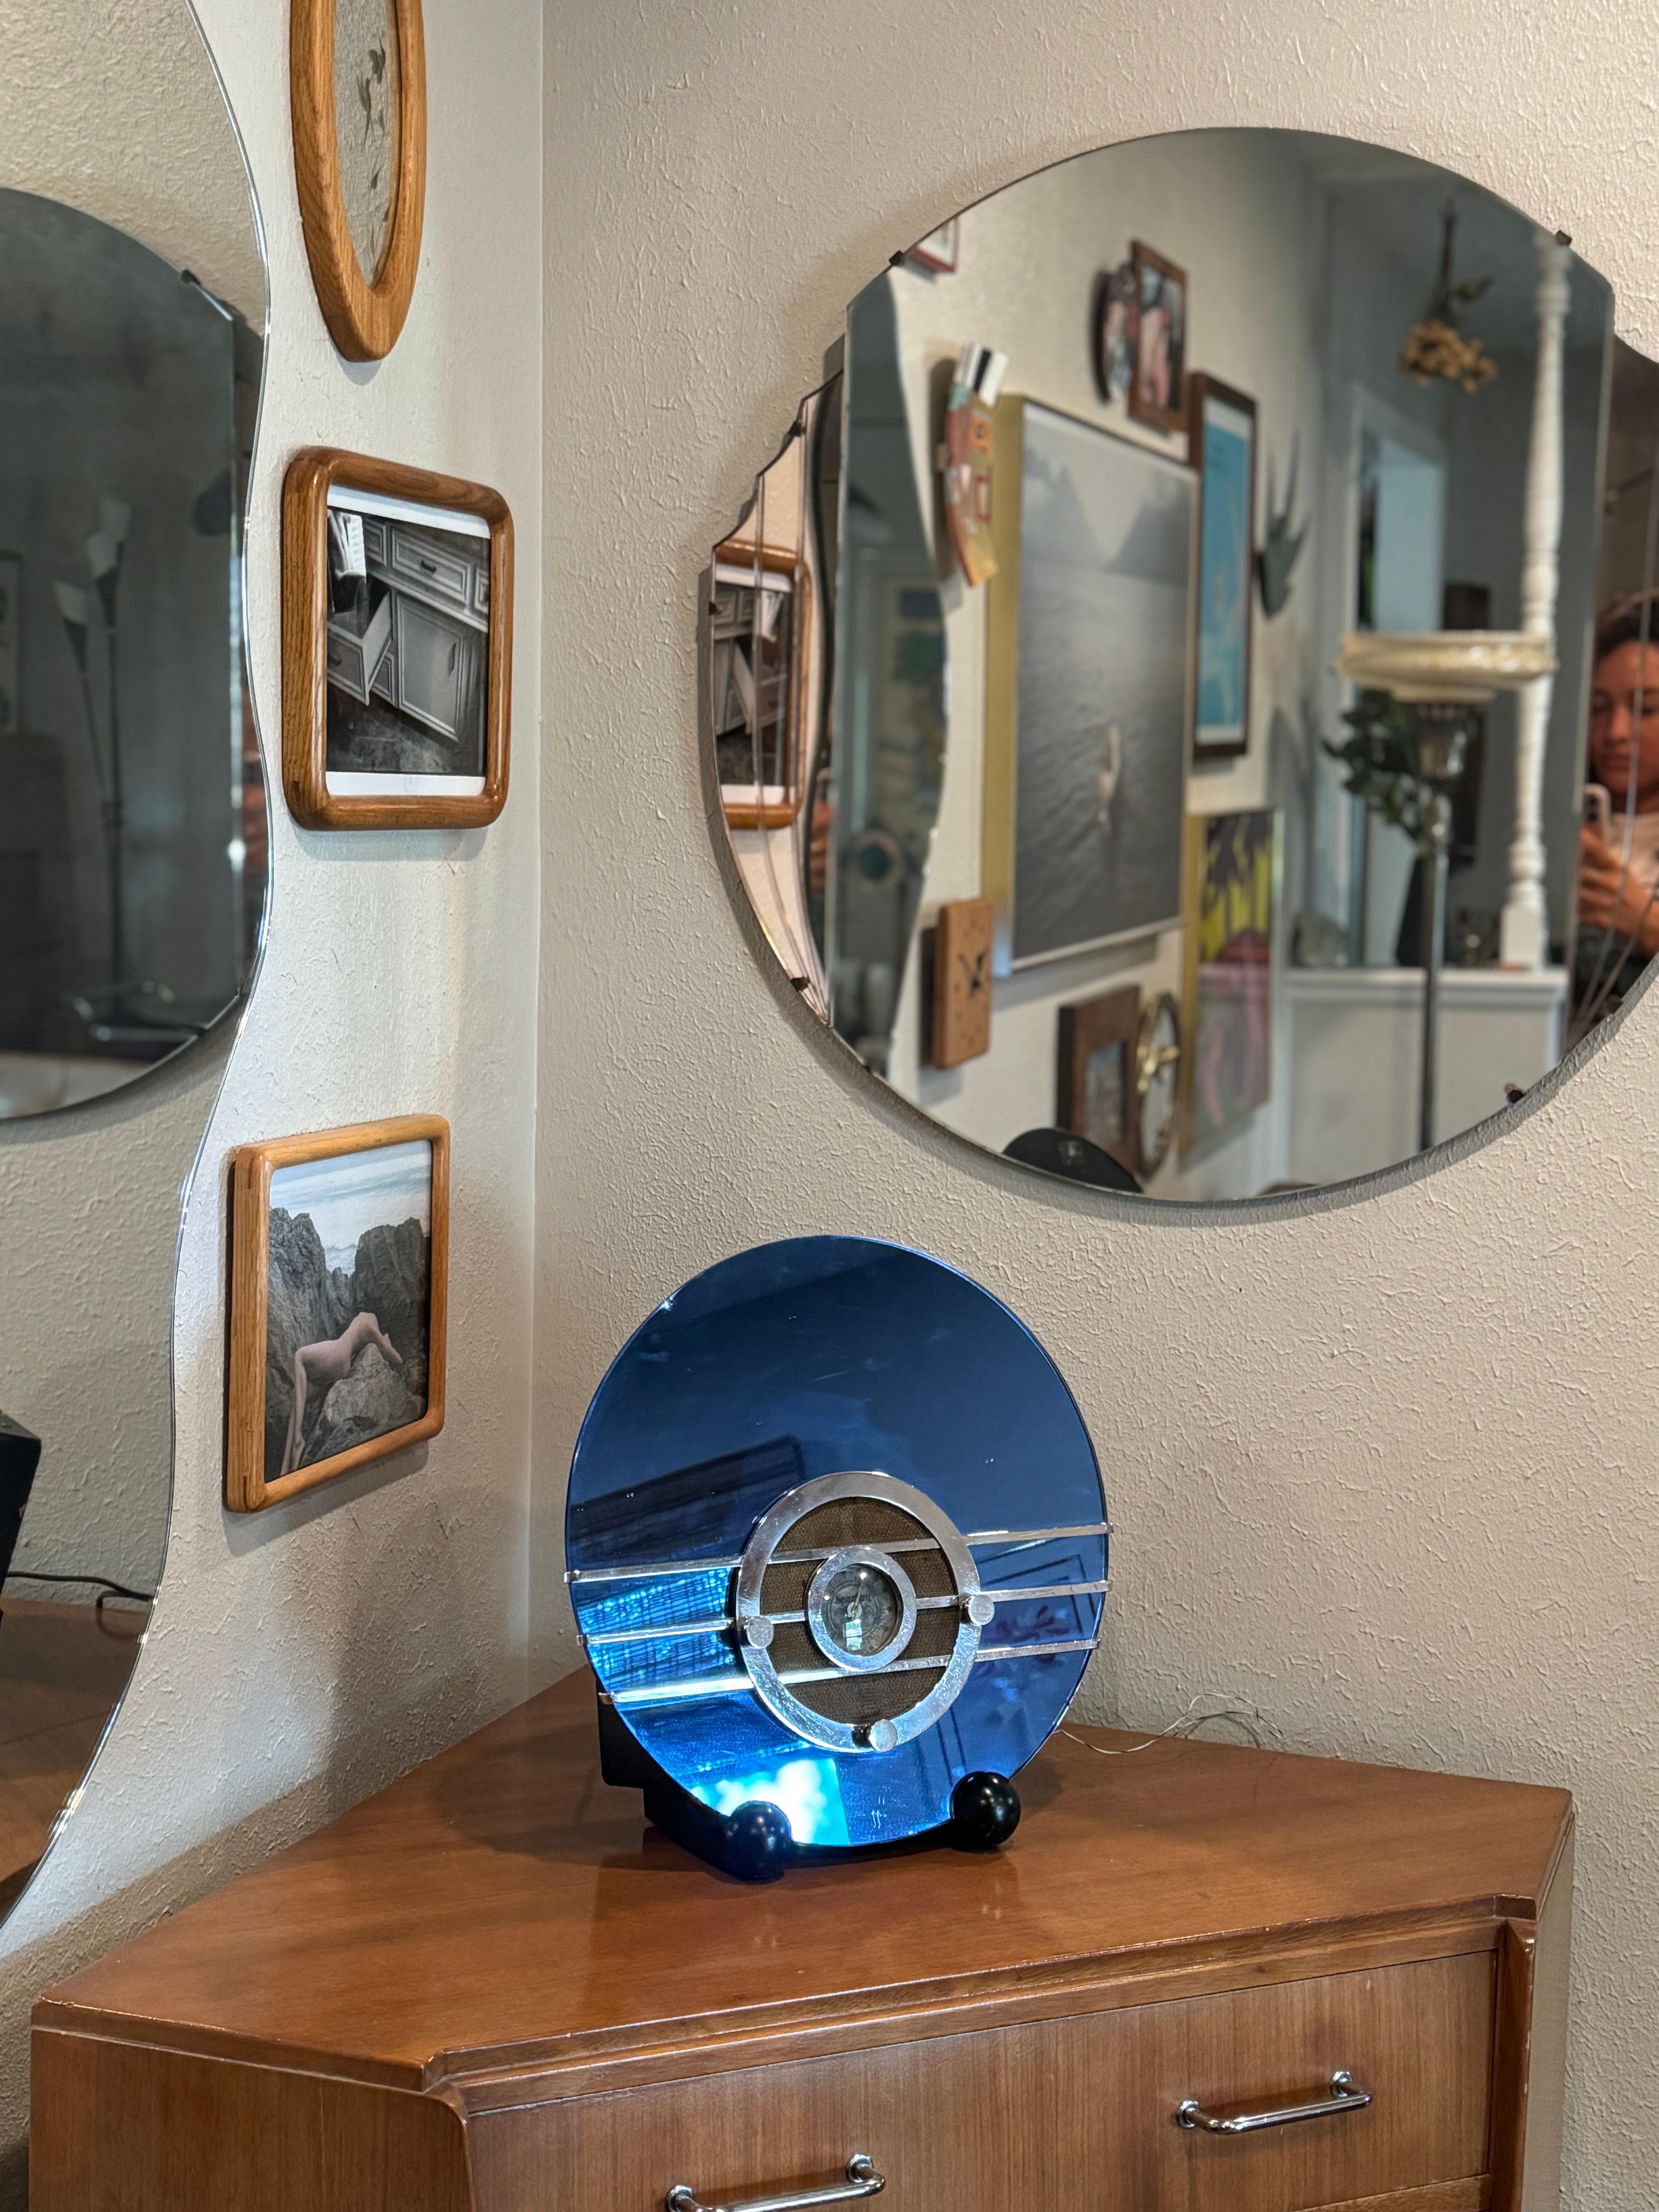 Magnifique radio d'origine Art Déco Sparton 'Bluebird' à miroir bleu cobalt modèle 566 conçue par Walter Dorwin Teague pour la Sparks-Worthington Company de Jackson, Michigan en 1936. La radio, connue sous le nom de 